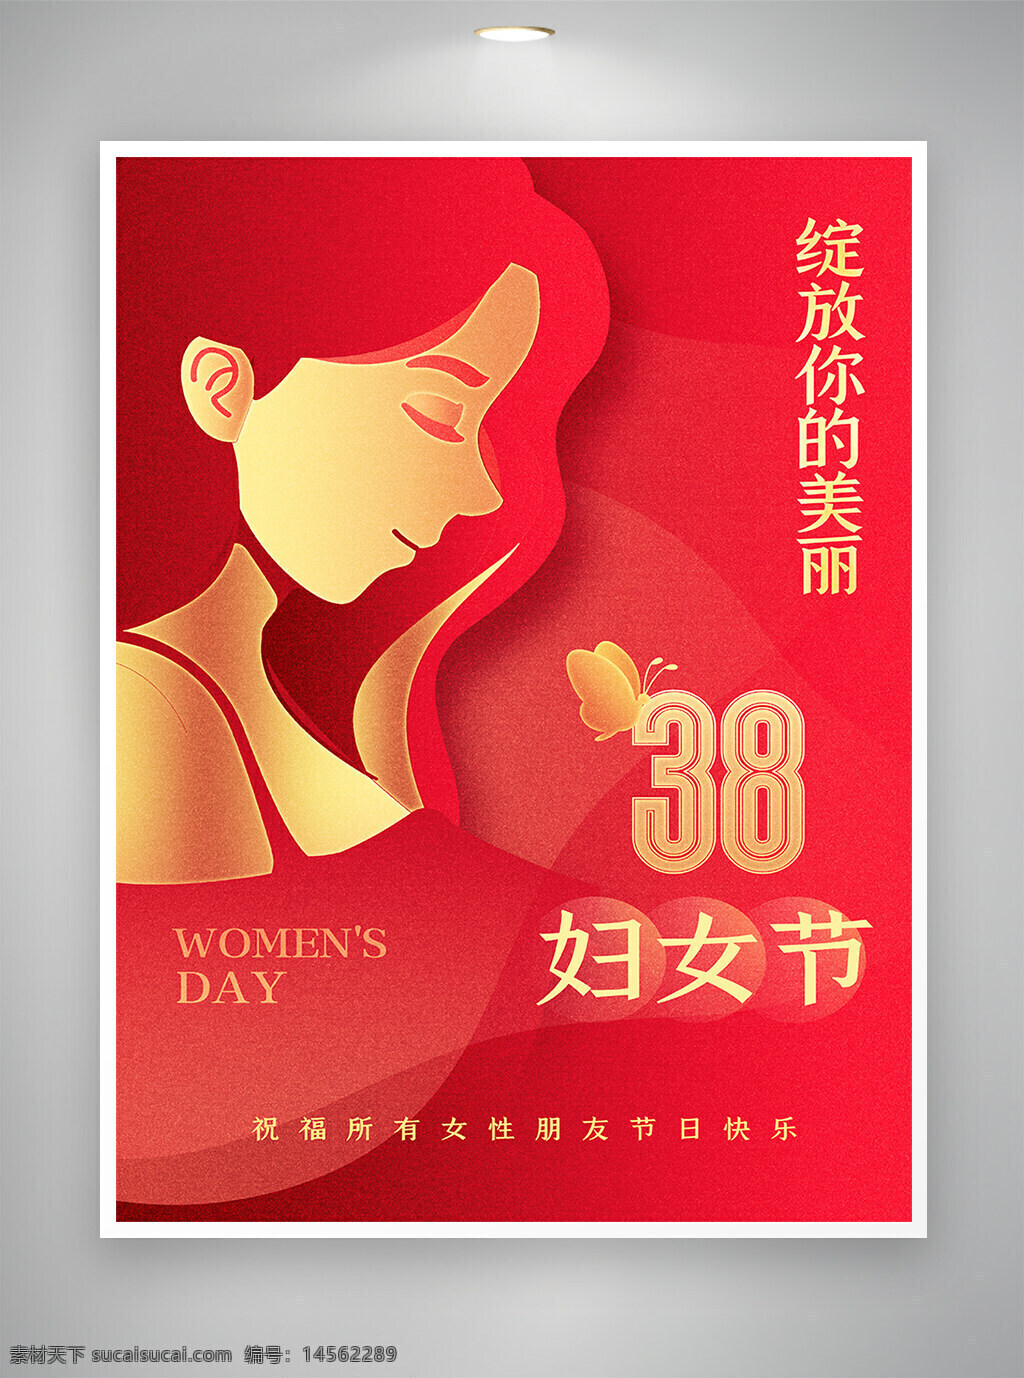 三八妇女节 妇女节 妇女节宣传 妇女节海报 节日宣传 节日海报 宣传海报 海报